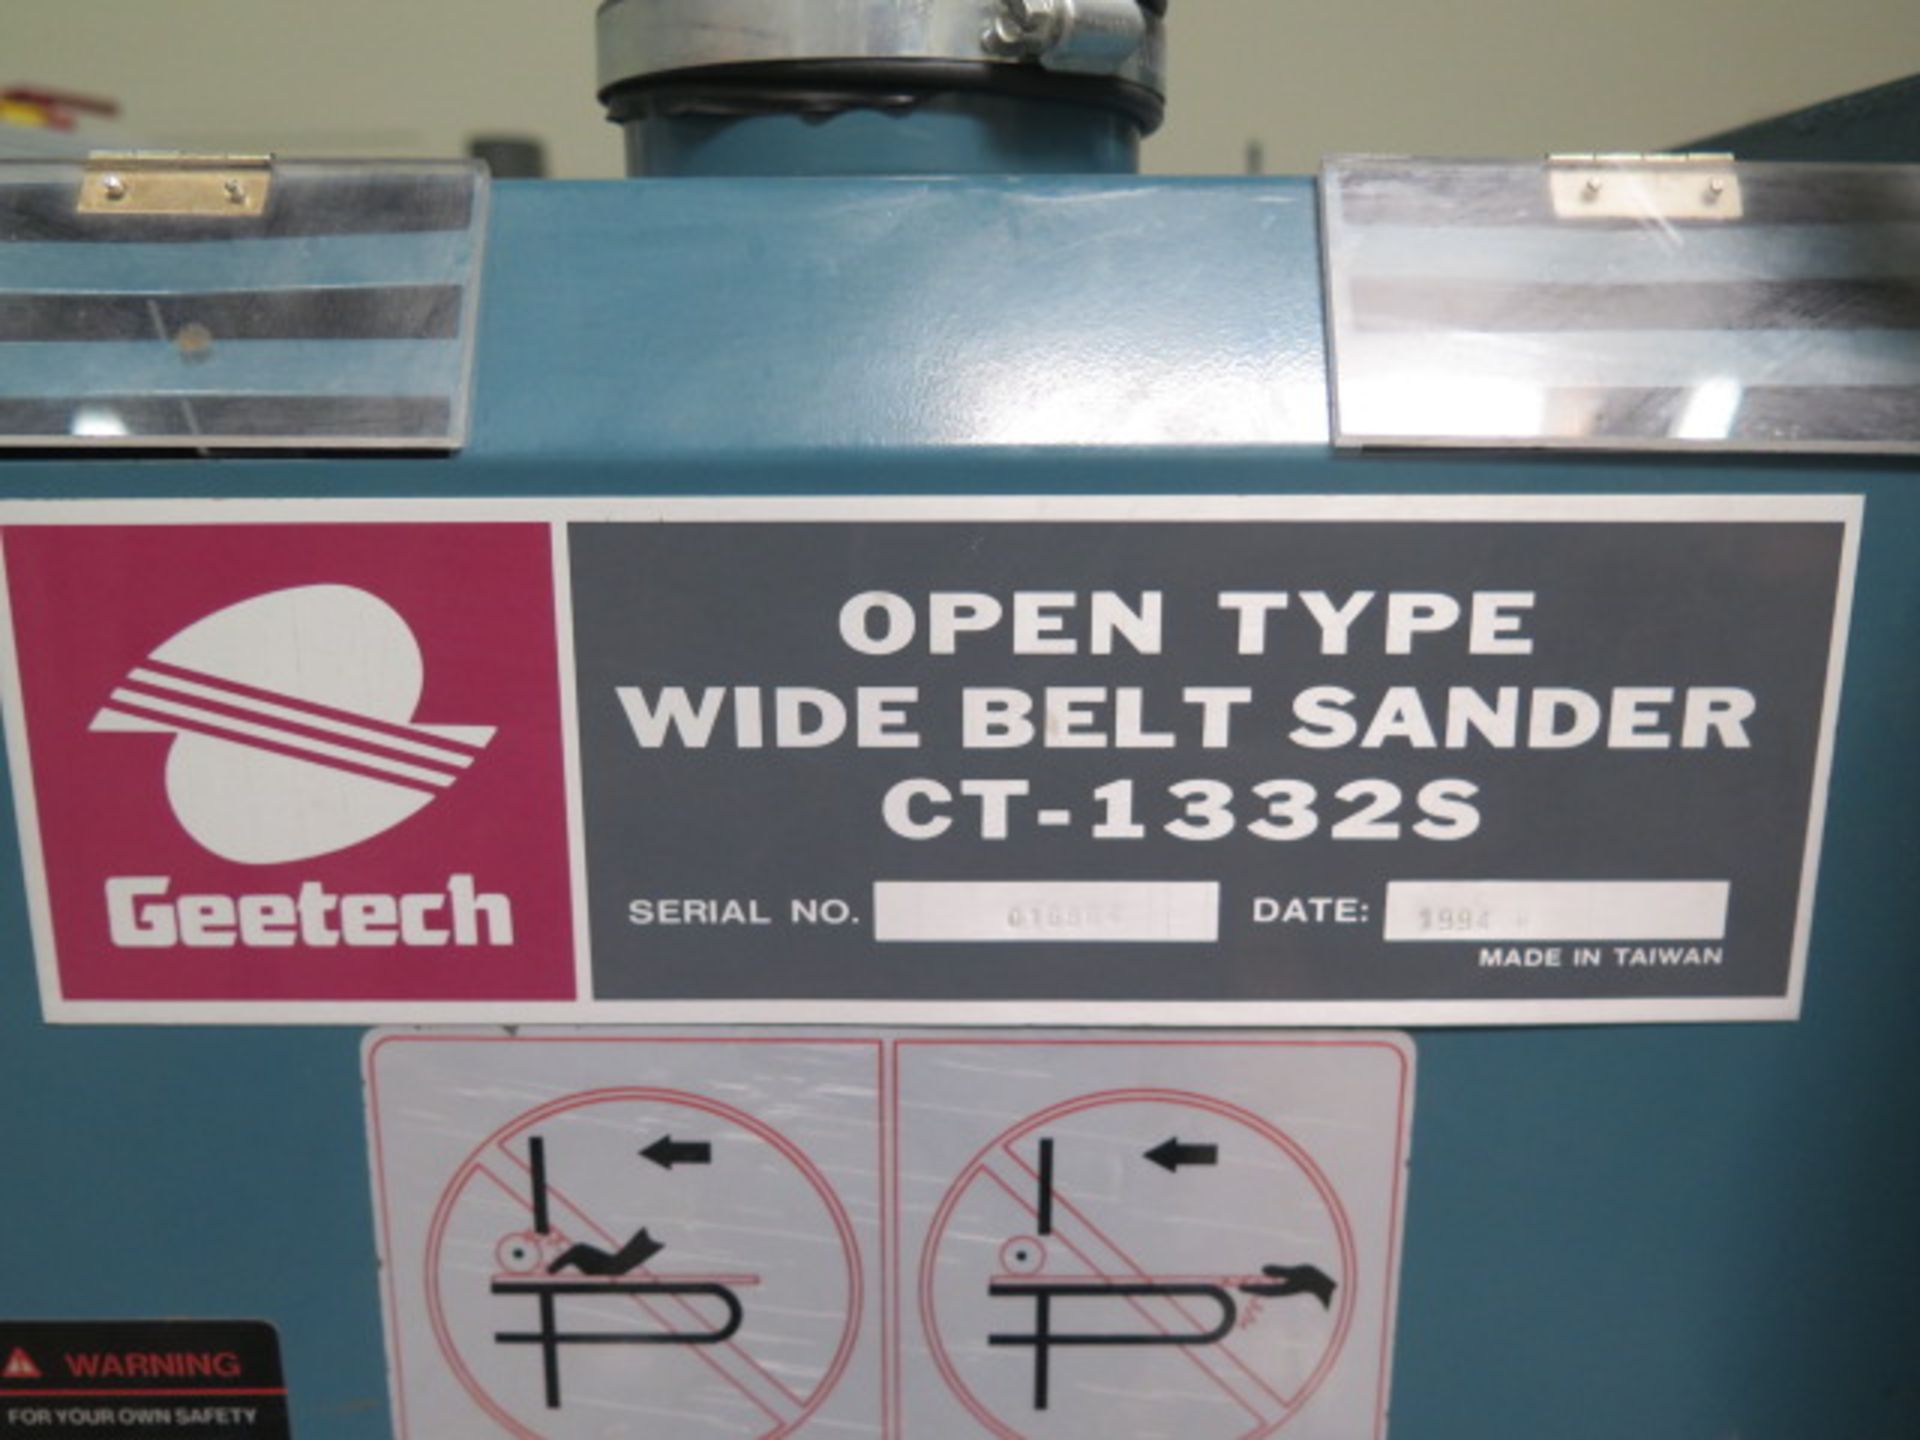 Geetech CT-1332S 13” Open Type Wide Belt Sander s/n 016864 w/ 13” Belt Feed, 2Hp Motor, SOLD AS IS - Image 7 of 7